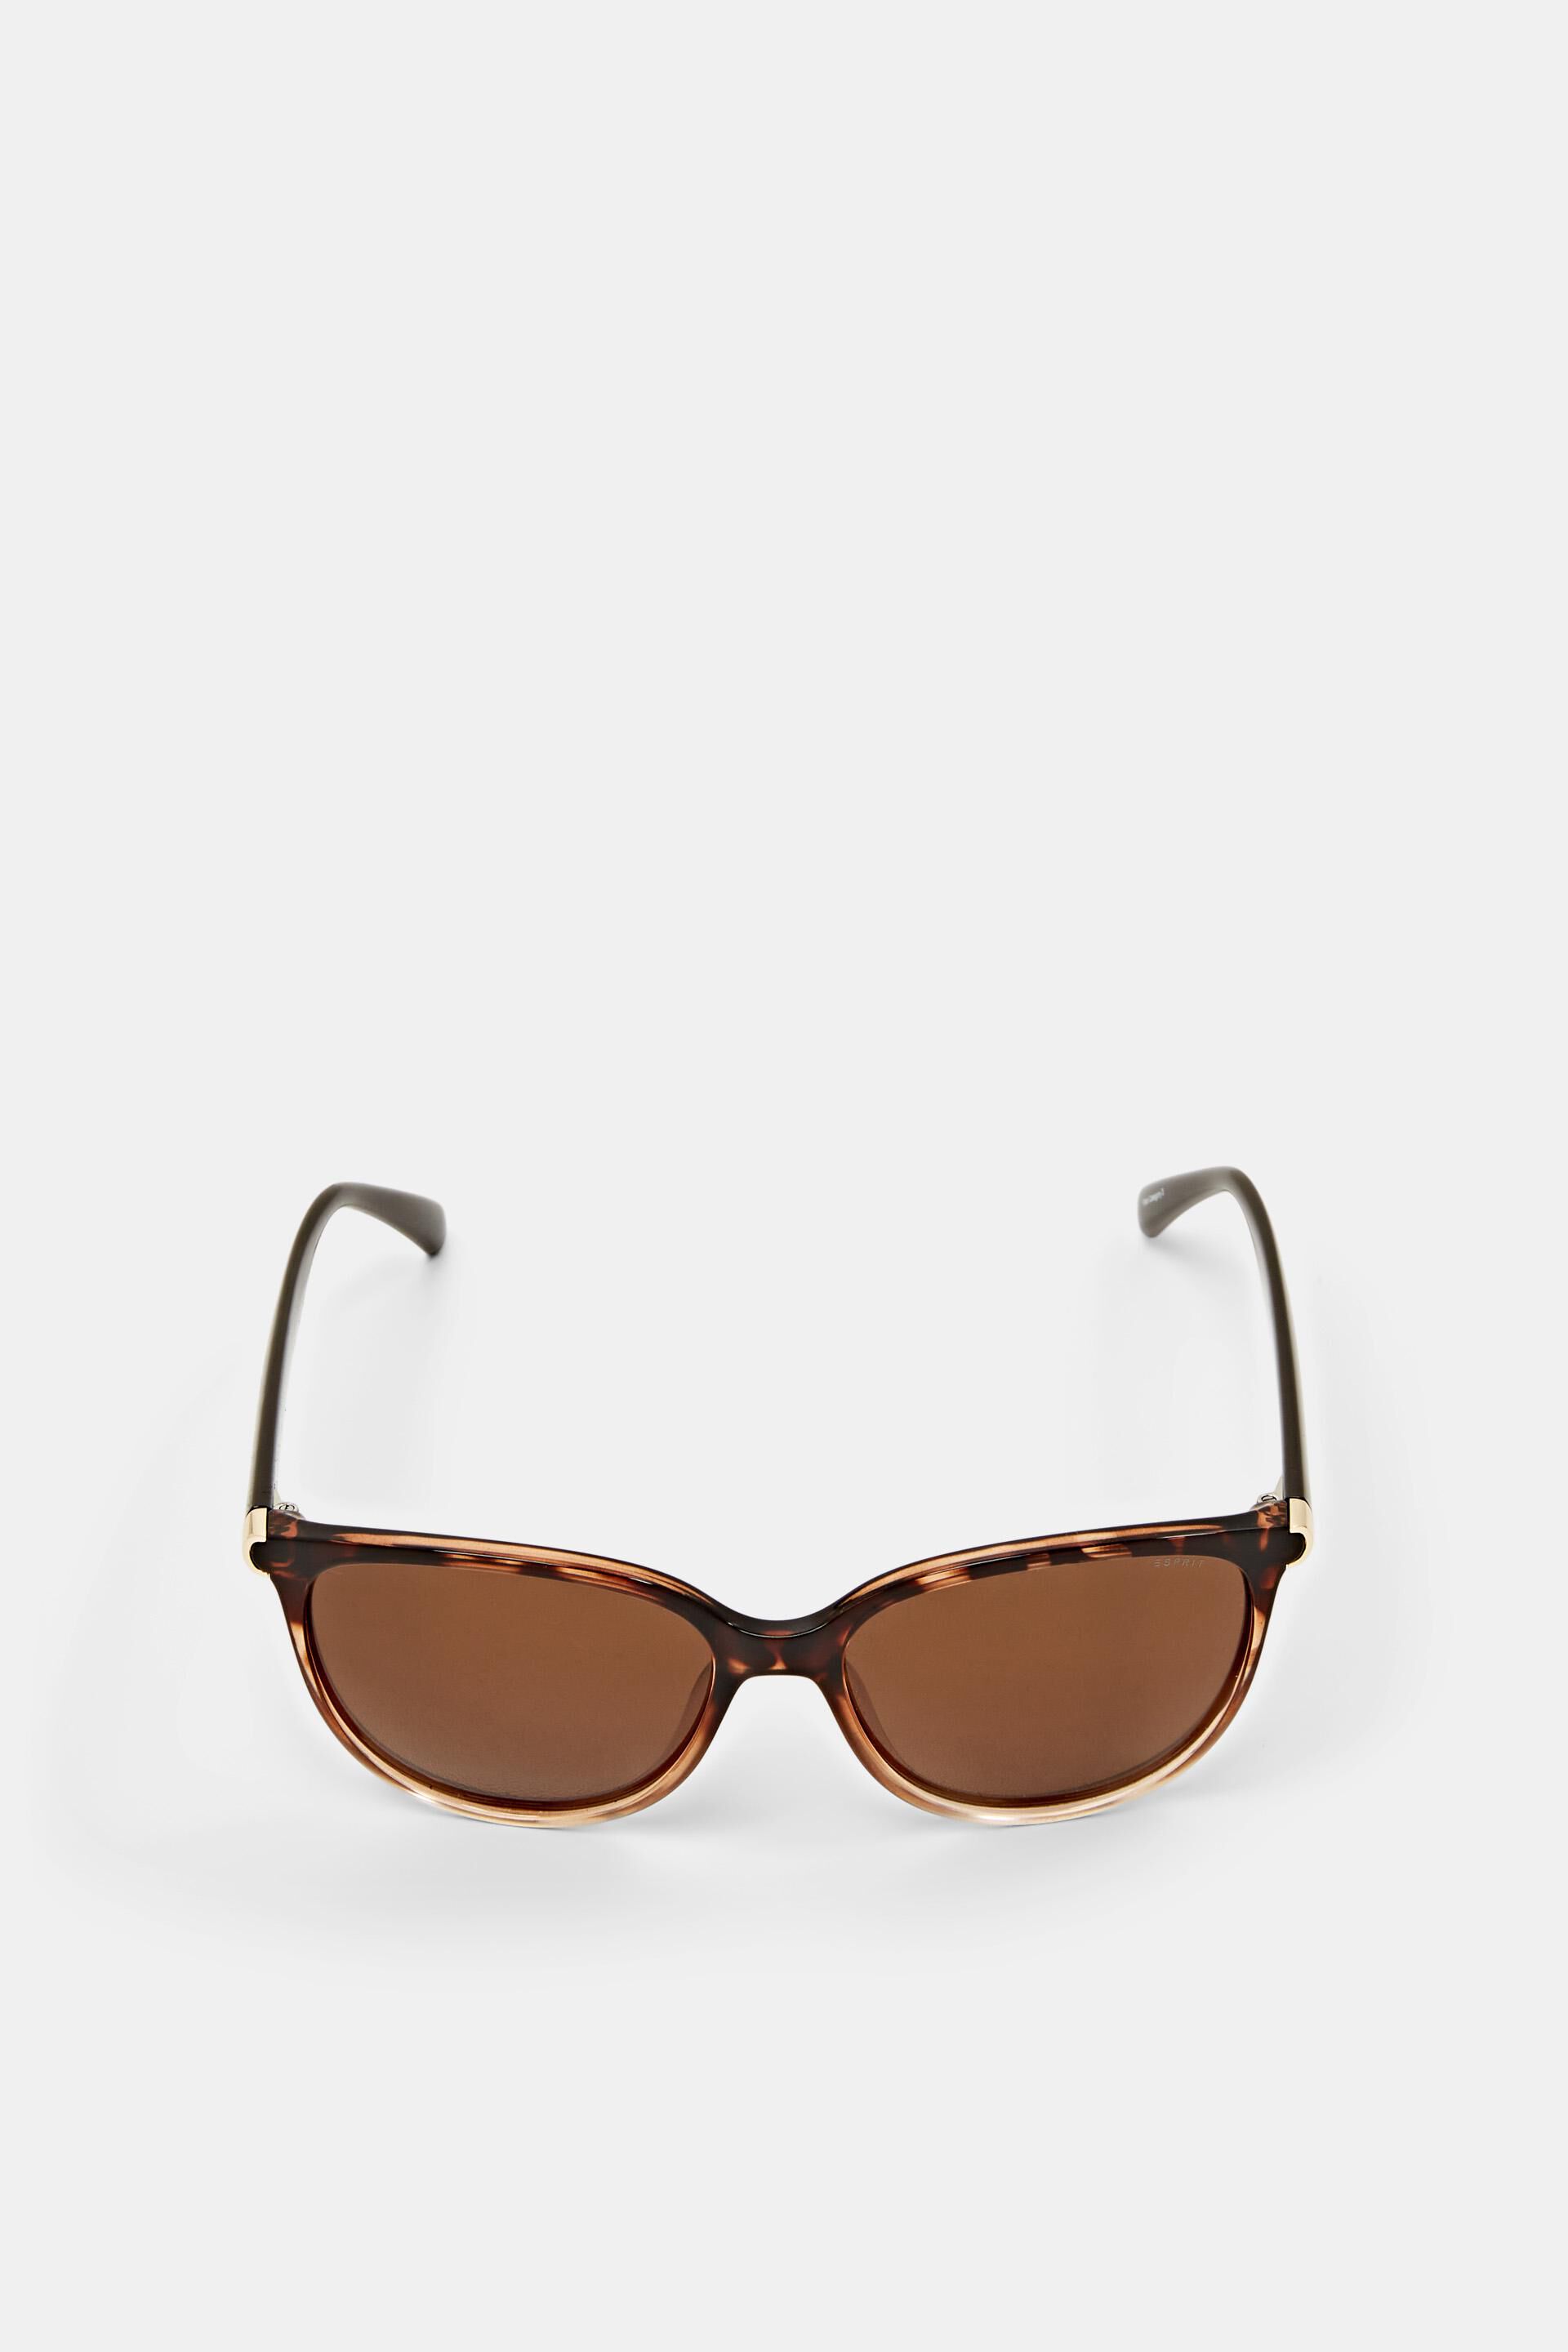 Esprit with Sunglasses lenses polarised